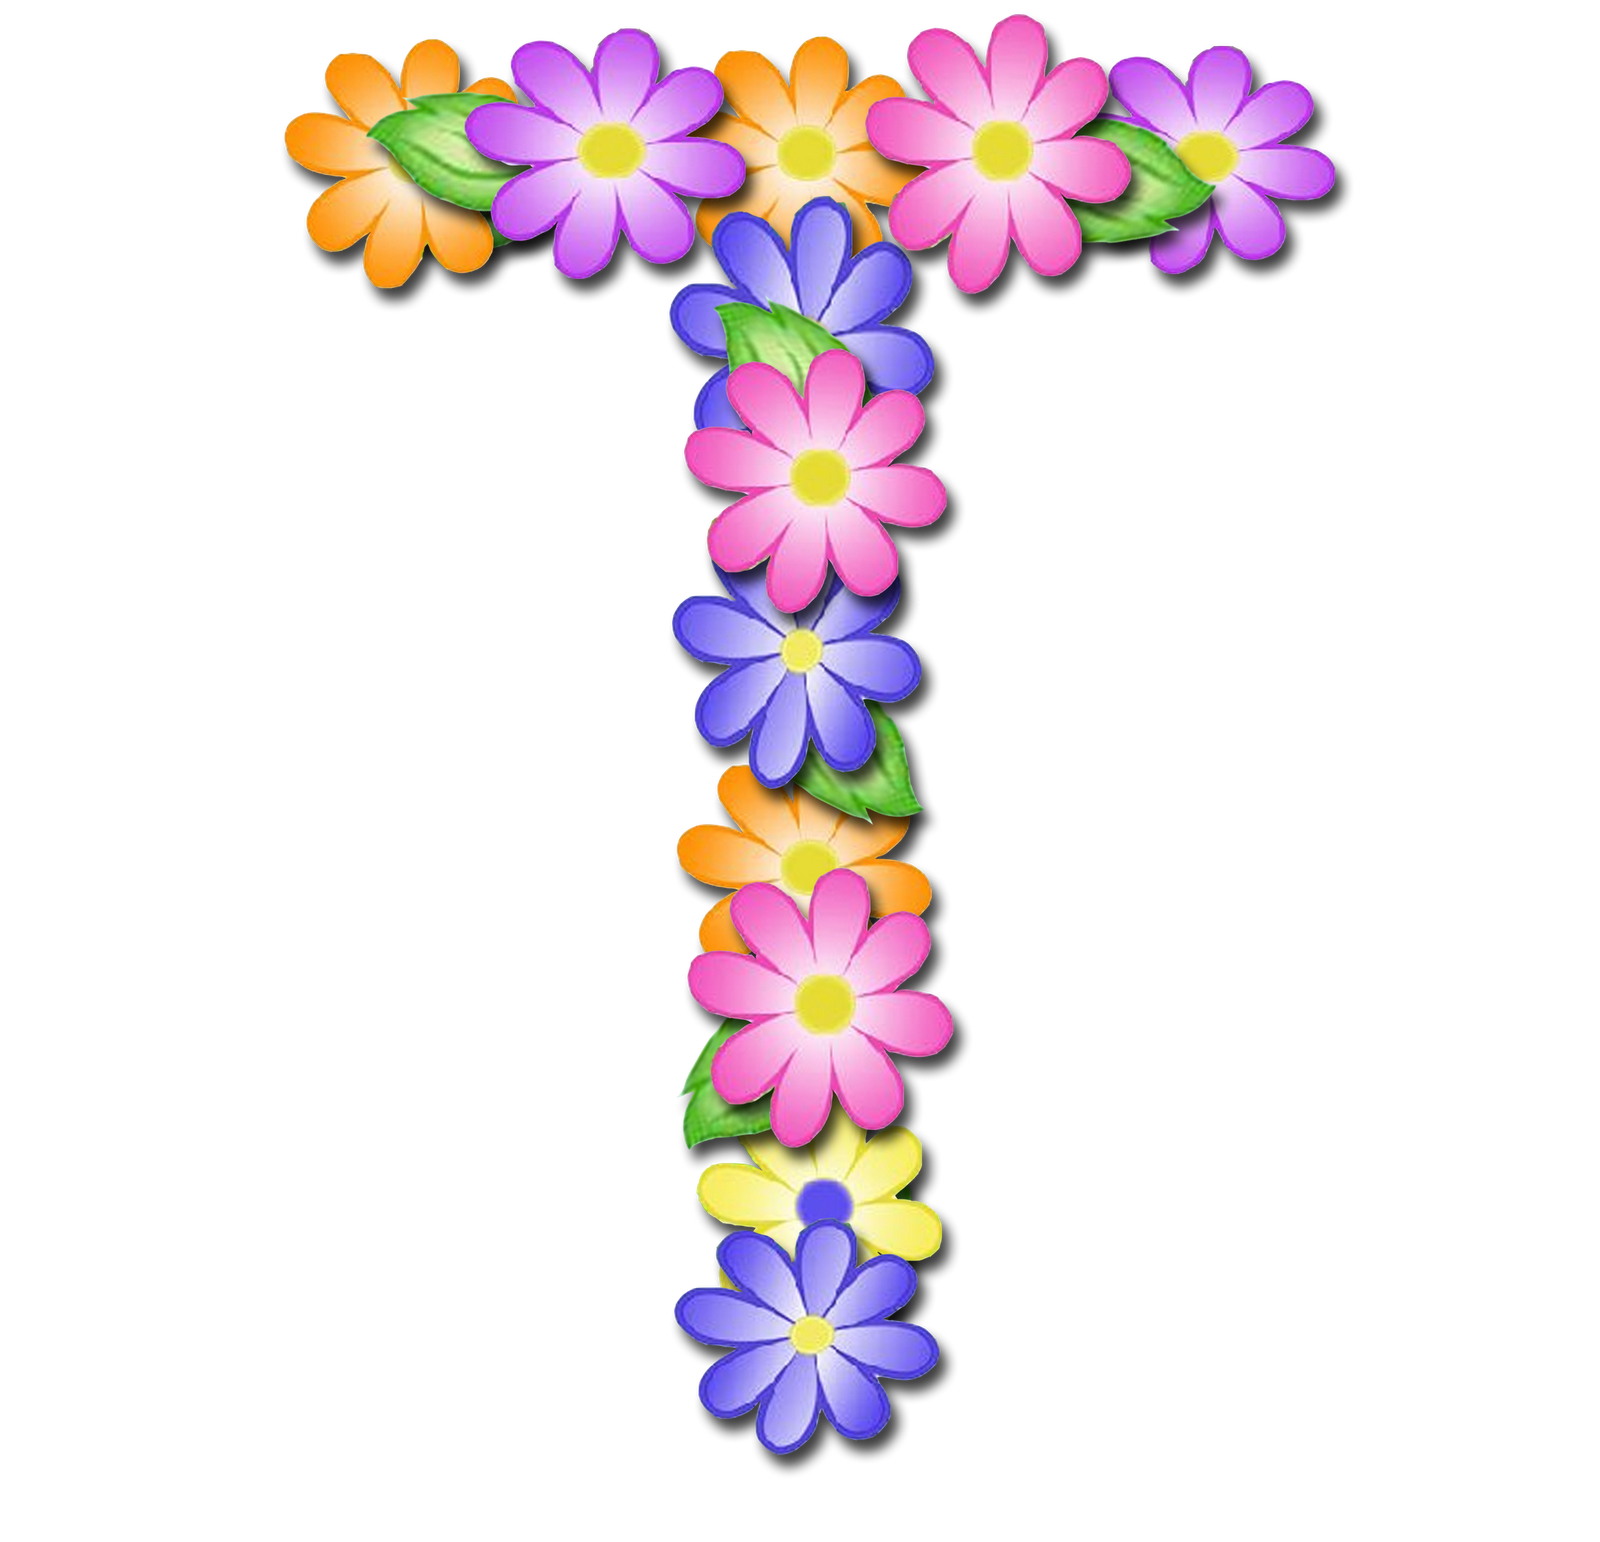 صور الحروف الإنجليزية بأجمل الزهور والورود بخلفية شفافة بنج png وجودة عالية للمصممين :: إبحث عن حروف إسمك بالإنجليزية - صفحة 2 P_1699bzwm71